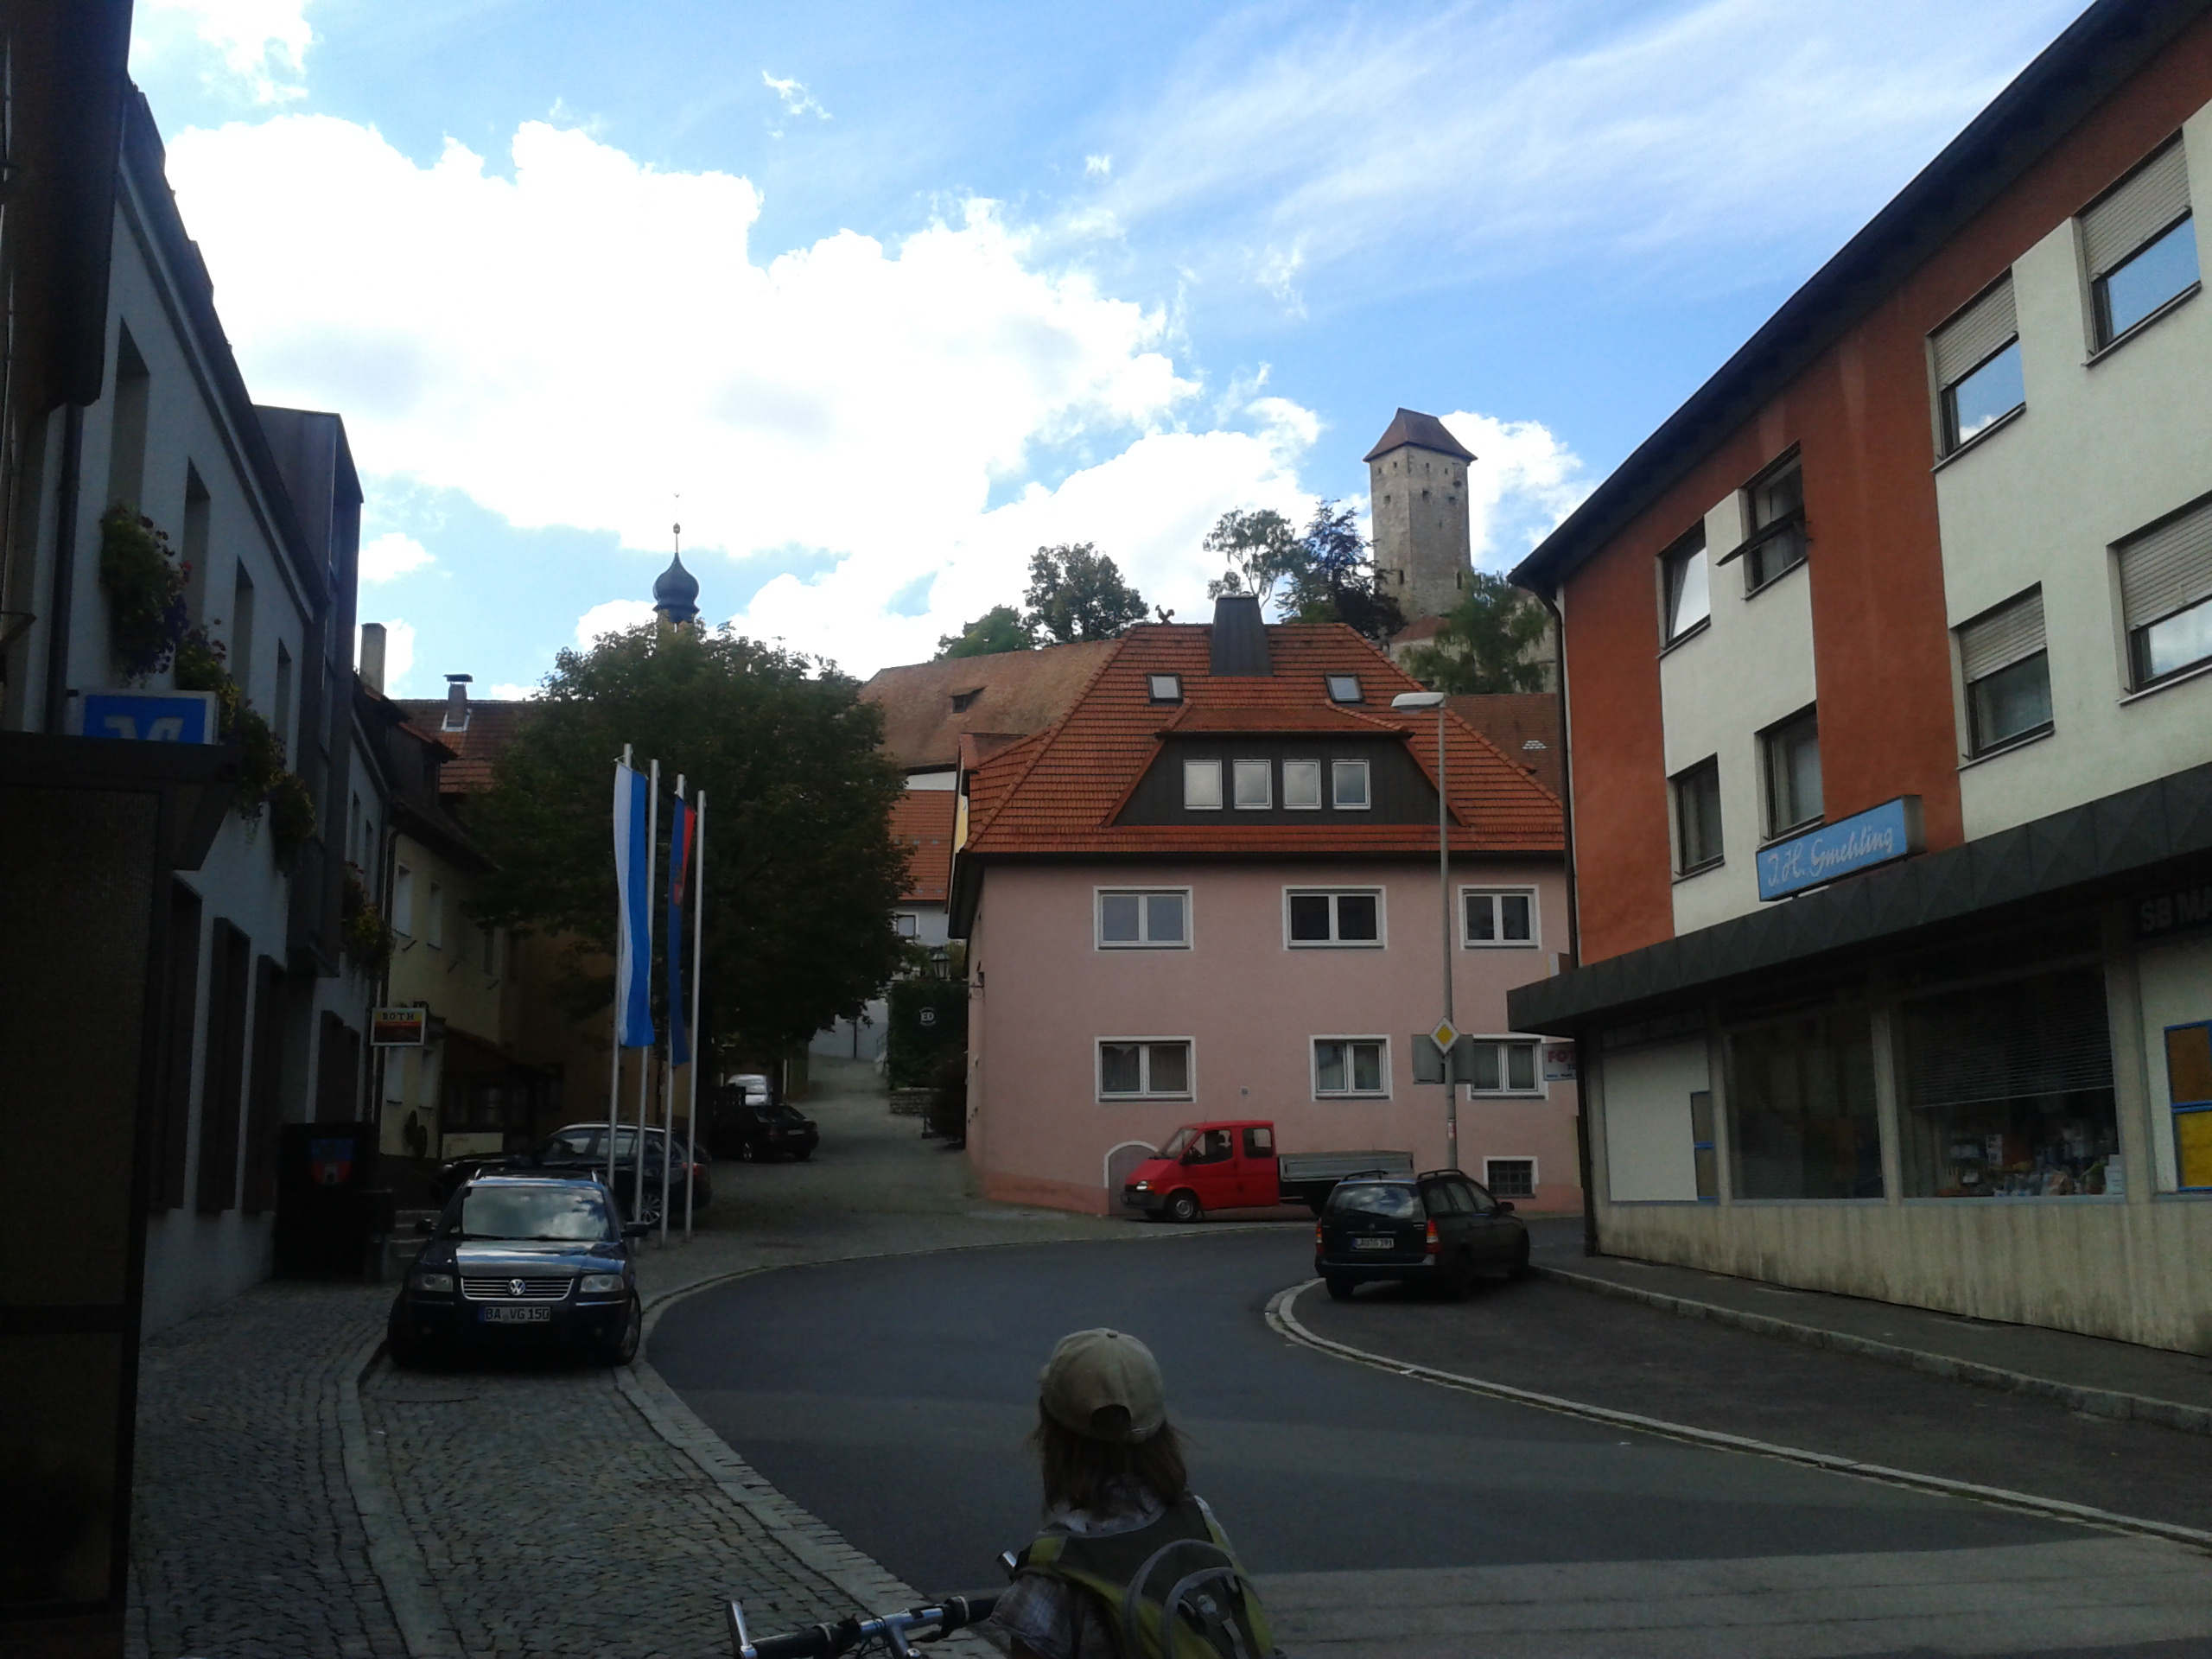 Blick vom Unteren Markt zur Kath. Kirche und Burg Veldenstein.